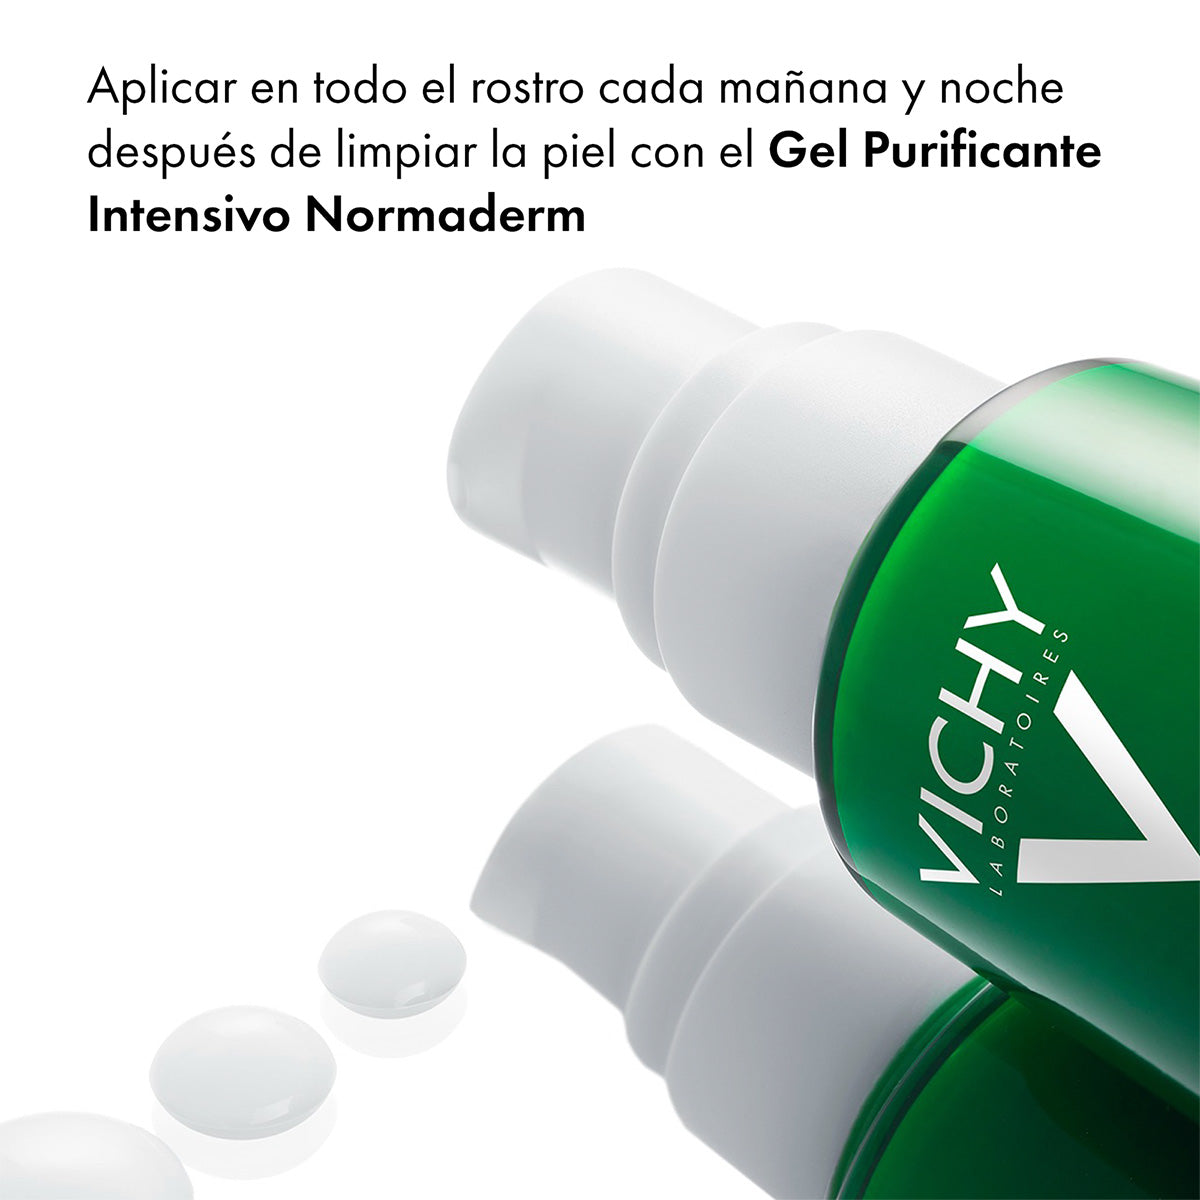 Vichy Normaderm Phytosolution, Corrige imperfecciones y regenera la piel, 50ml.